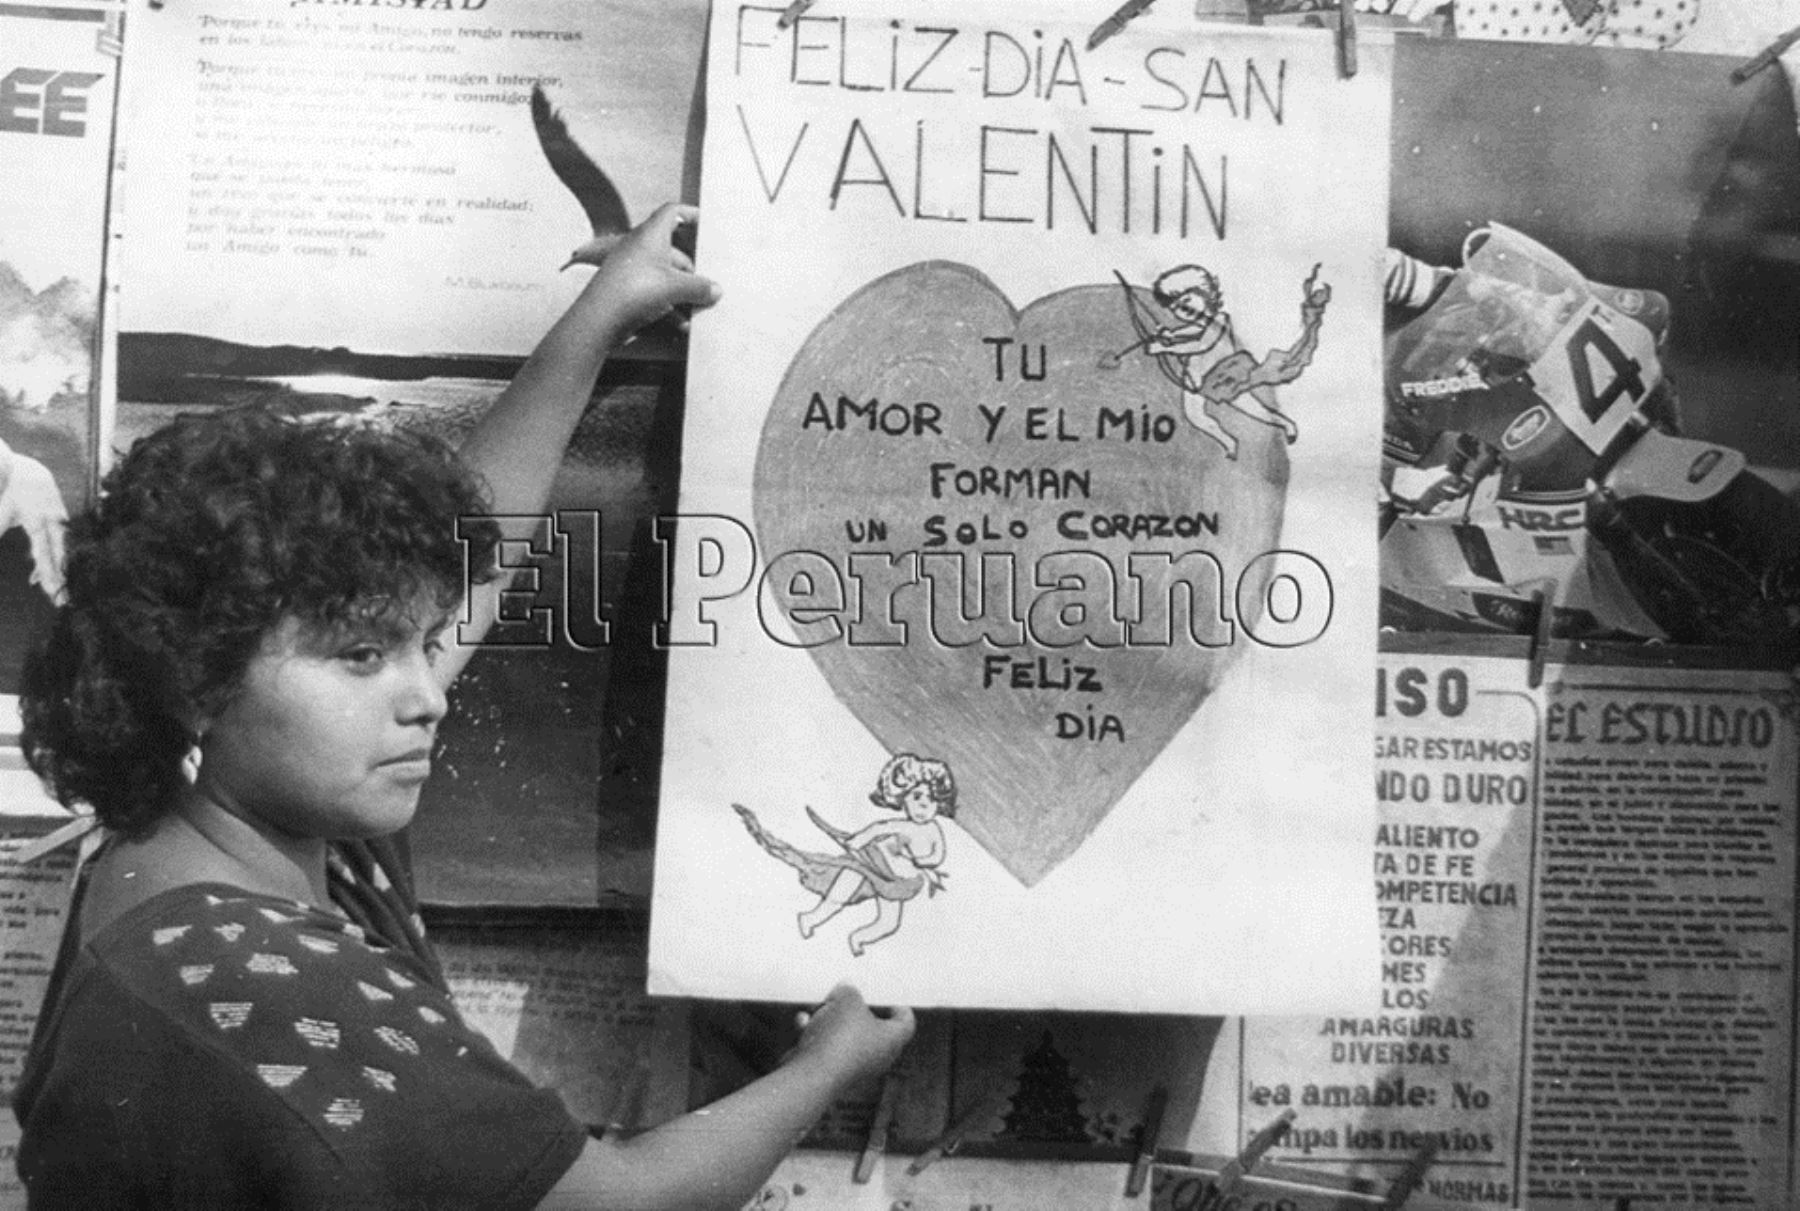 Celebrando Día de San Valentín decenas de décadas atrás en Lima.